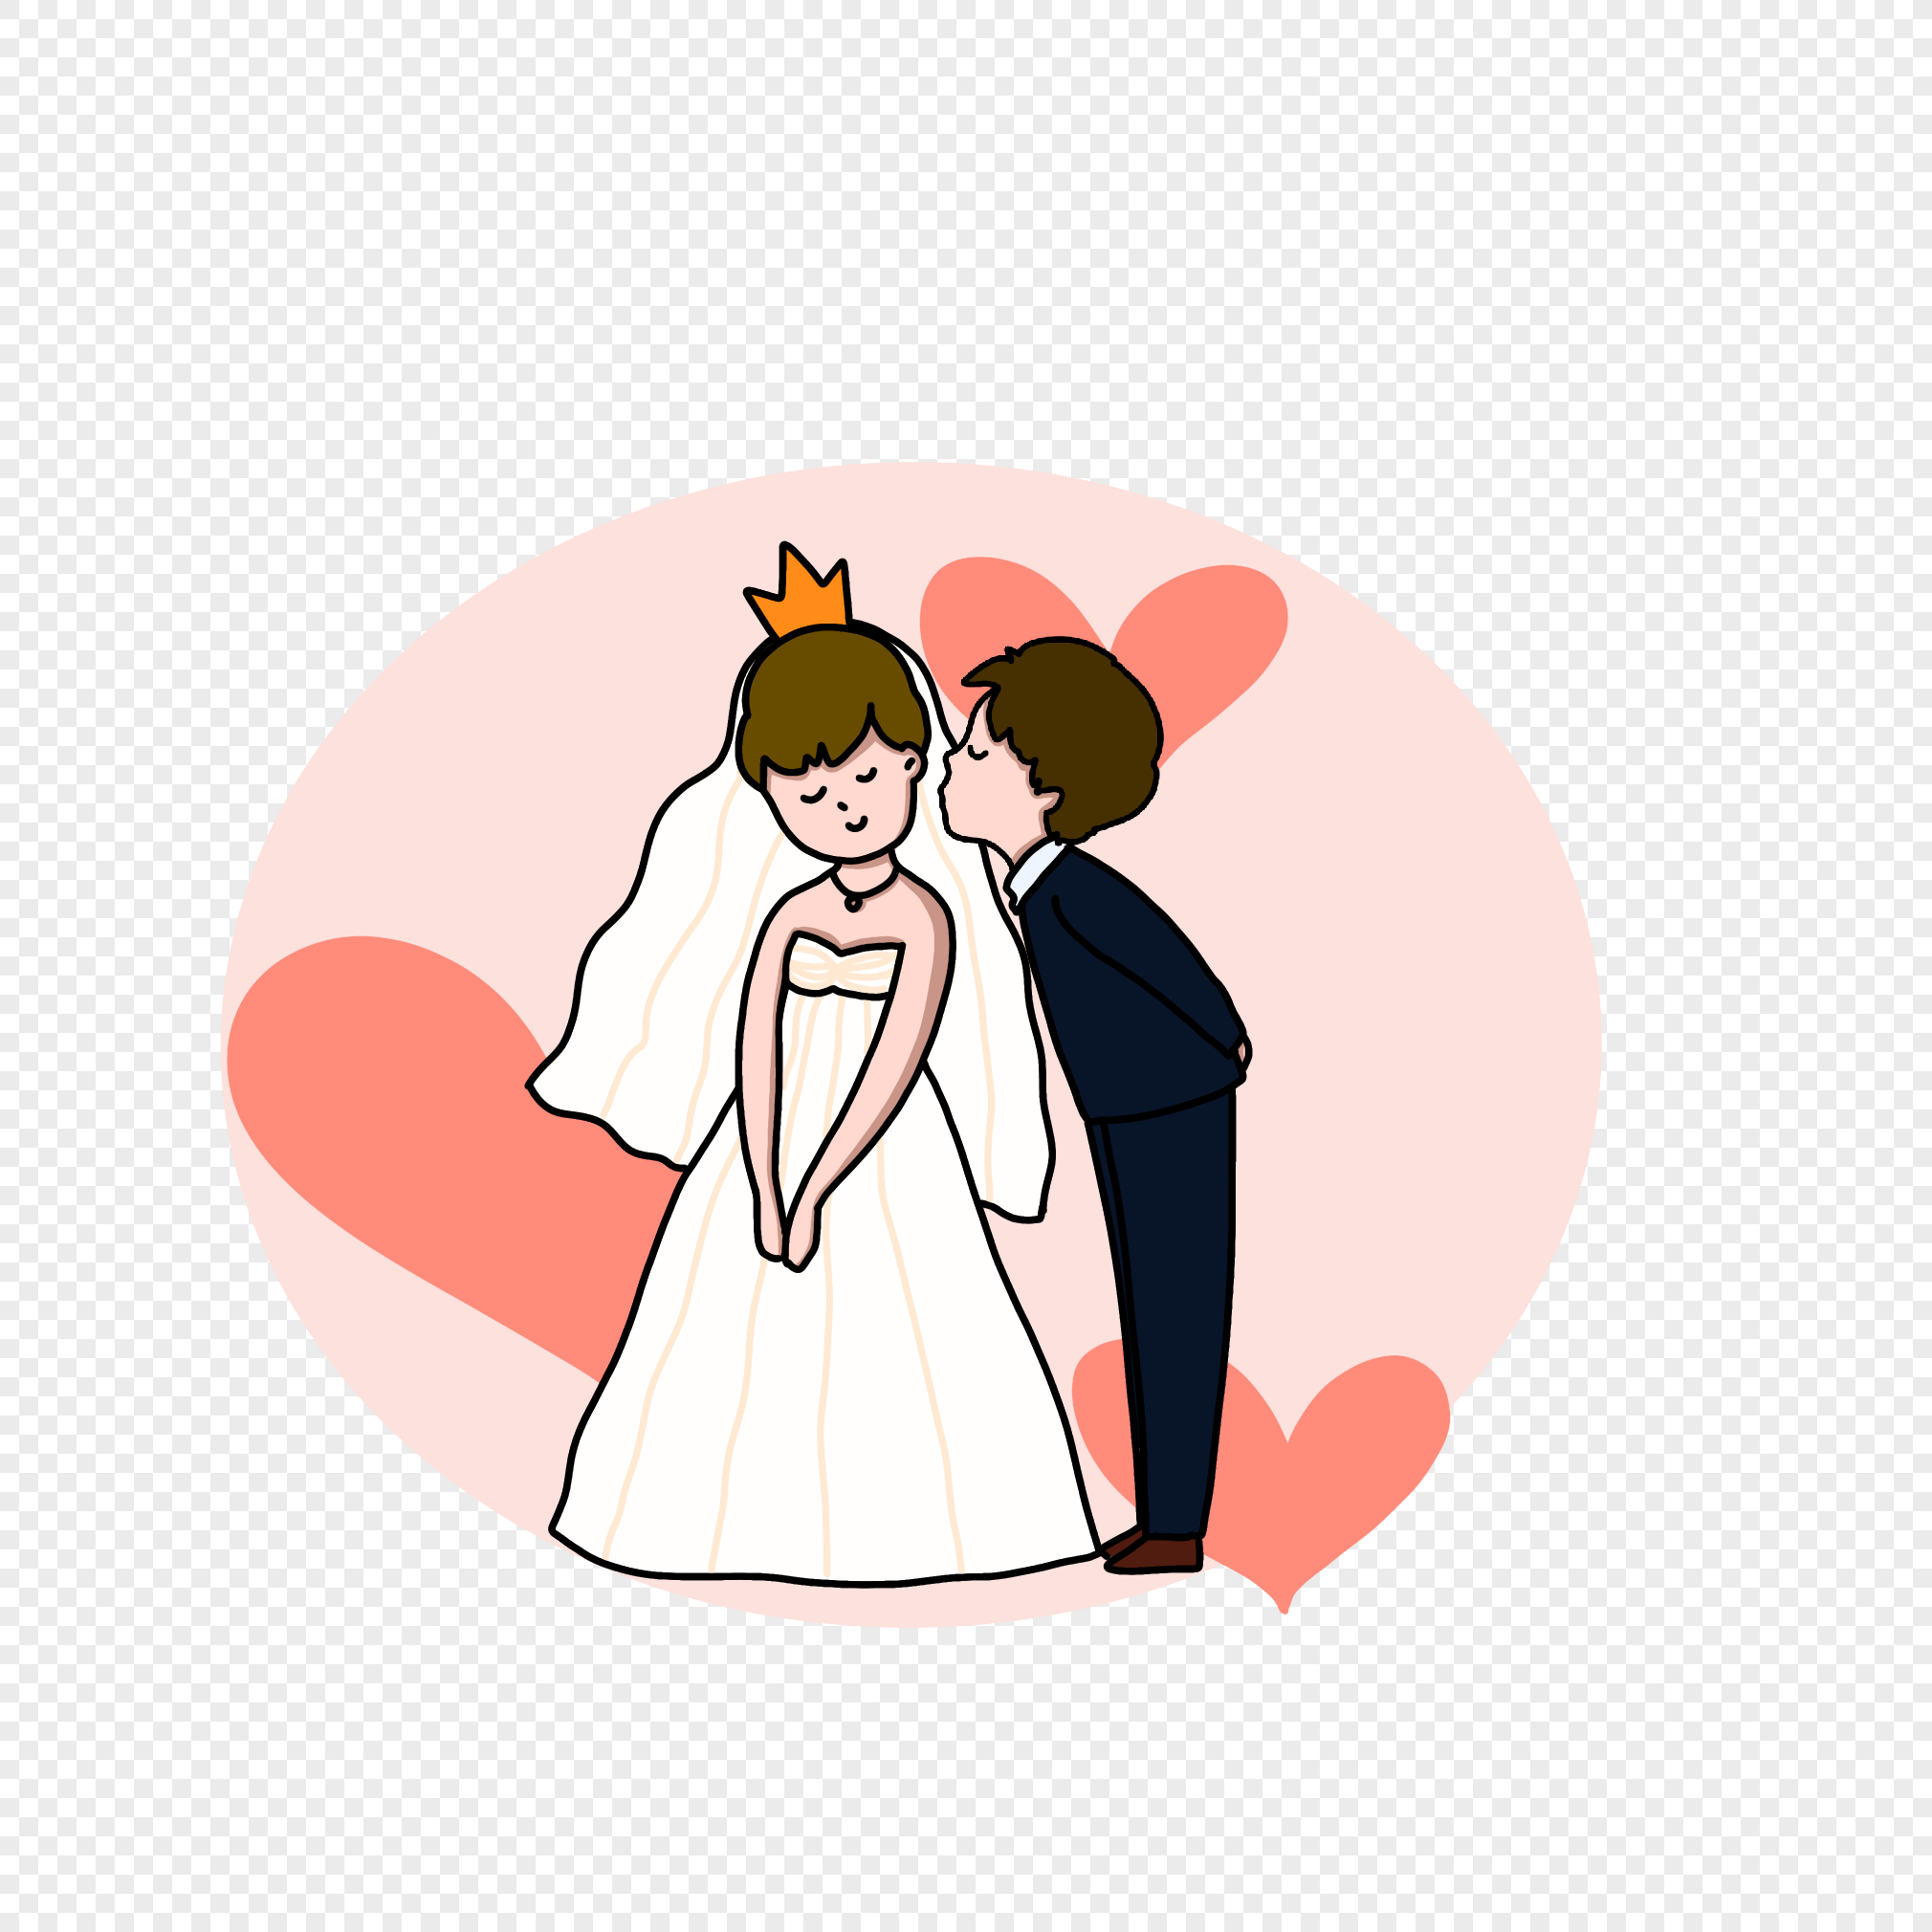 download gambar kartun pernikahan coreldraw free